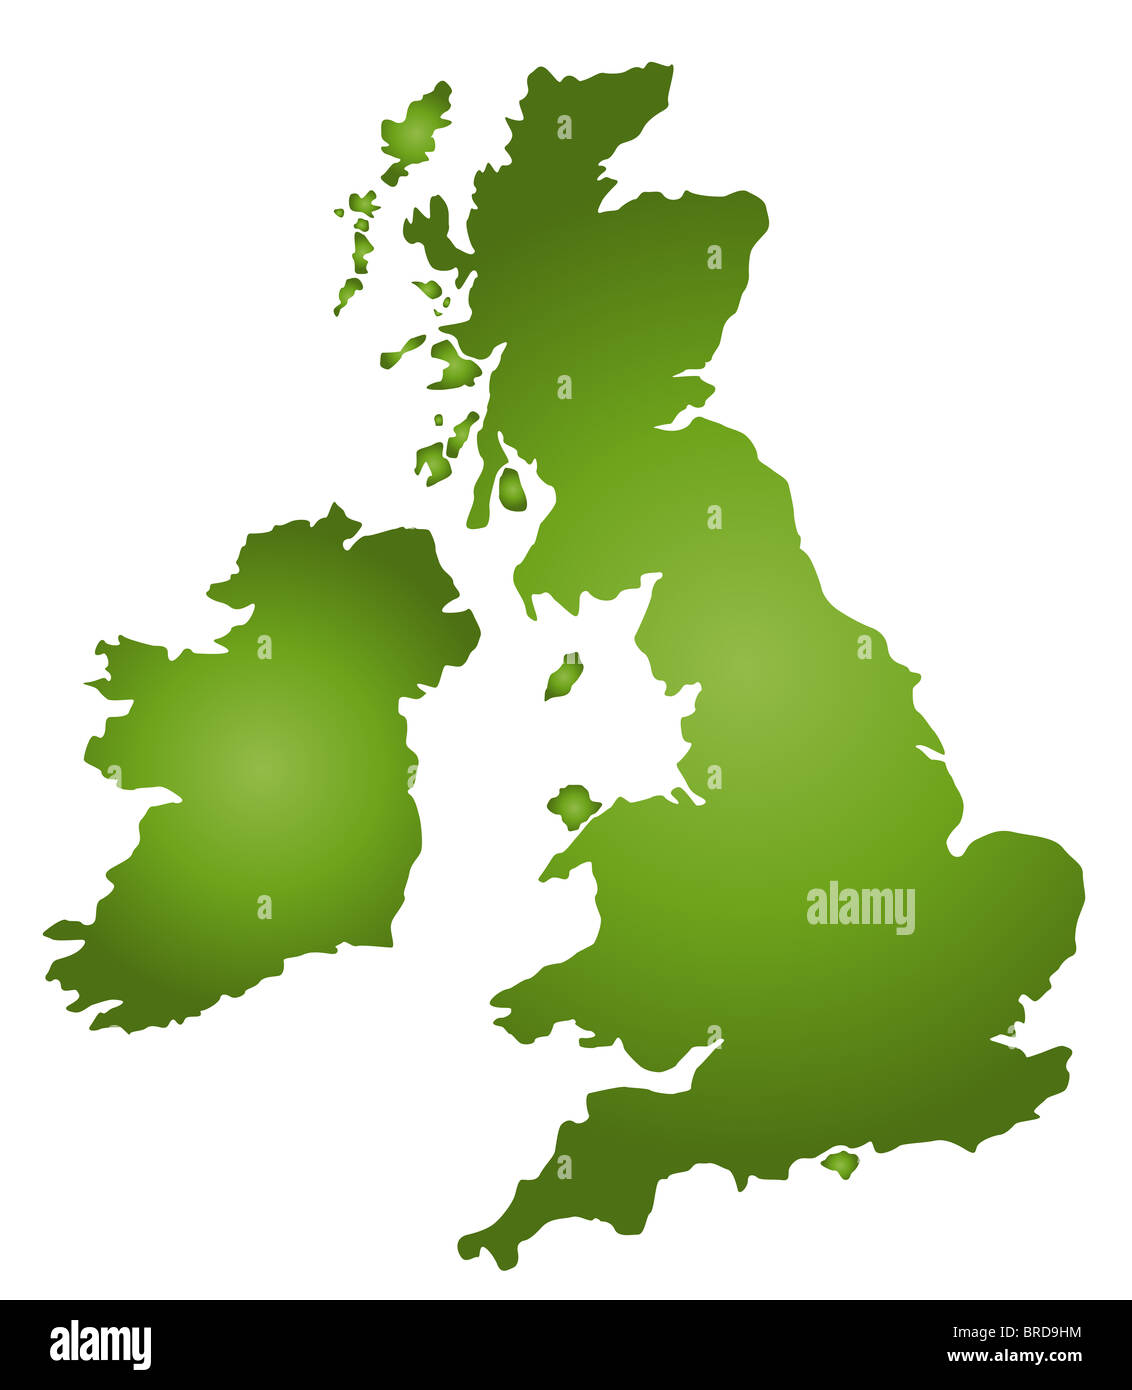 Eine stilisierte Karte des Vereinigten Königreichs im Grünton. Alle isoliert auf weißem Hintergrund. Stockfoto